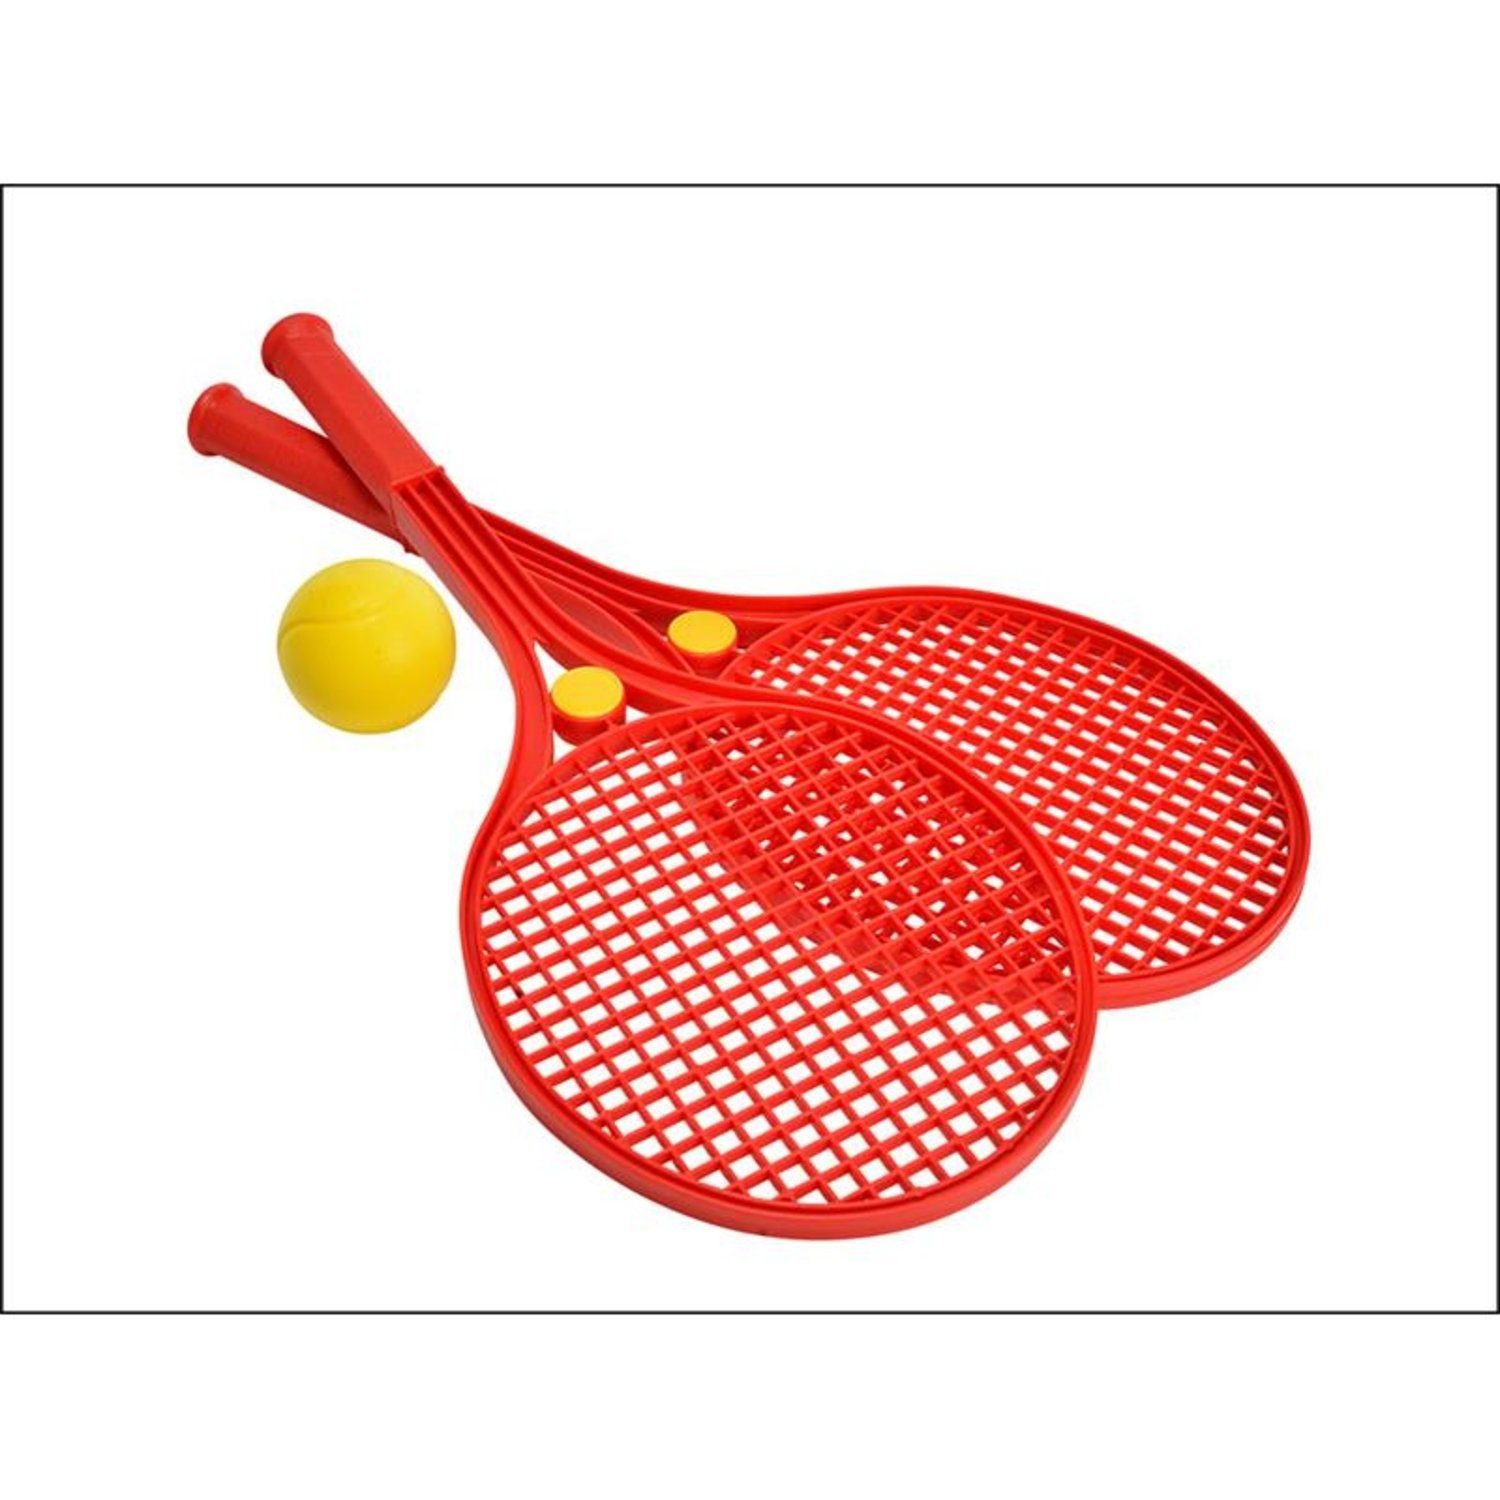 Softball-Tennis Dickie 3-fach Simba sortiert Basketballkorb 107401058